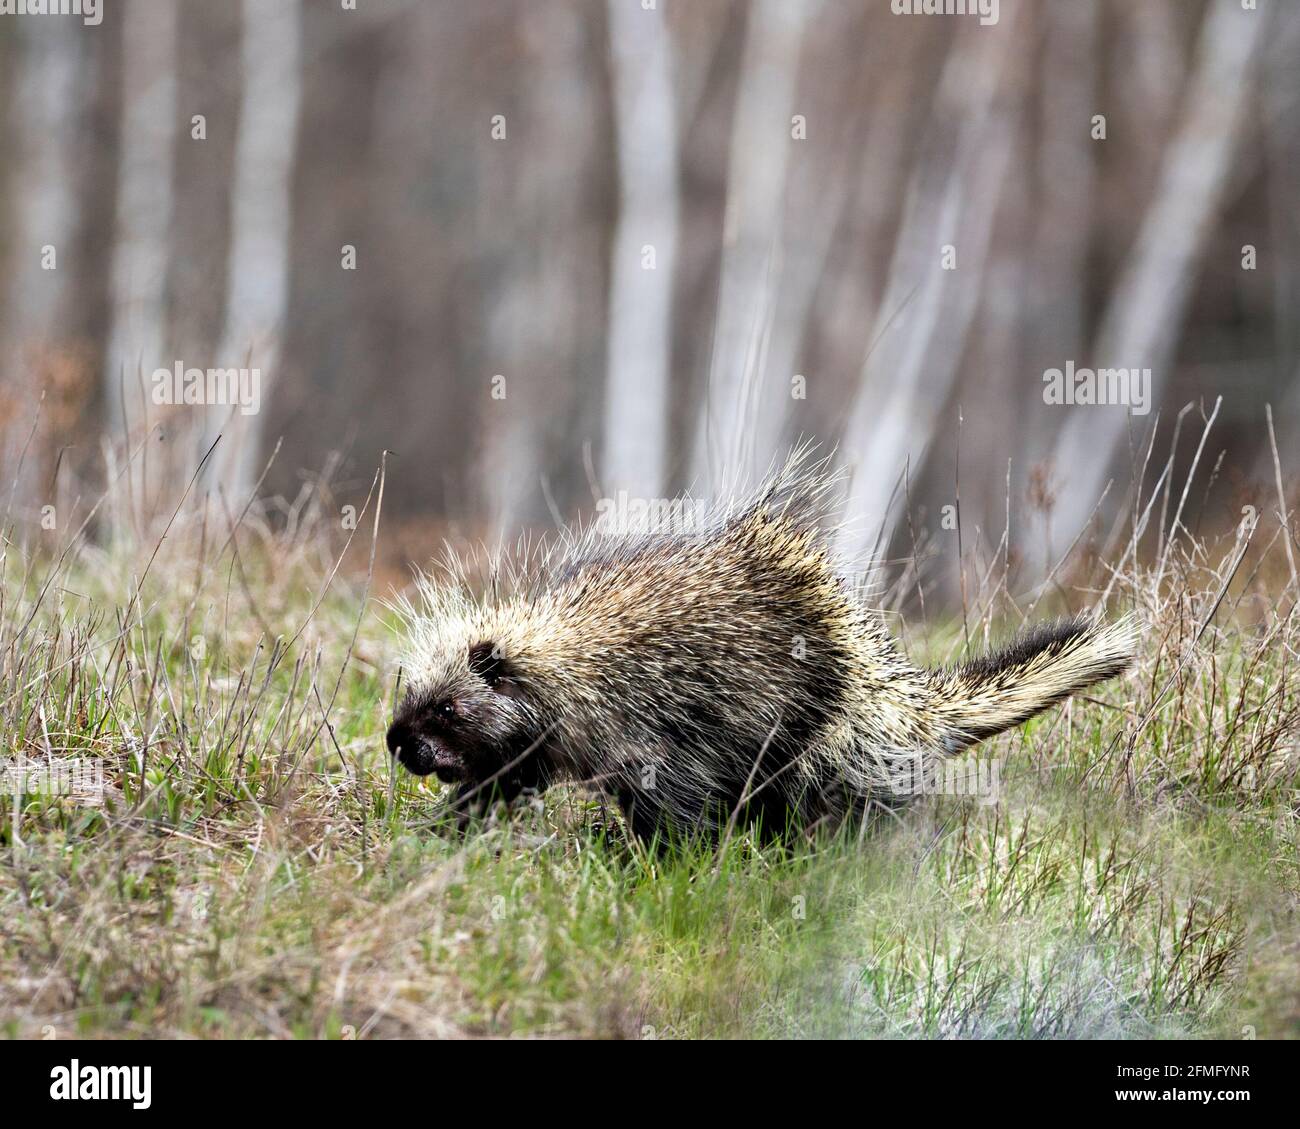 Porcupine marchant dans les prairies avec un arrière-plan flou, montrant le corps, la tête, le manteau de épines acérées, des quills, dans la saison de printemps dans son habitat. Banque D'Images